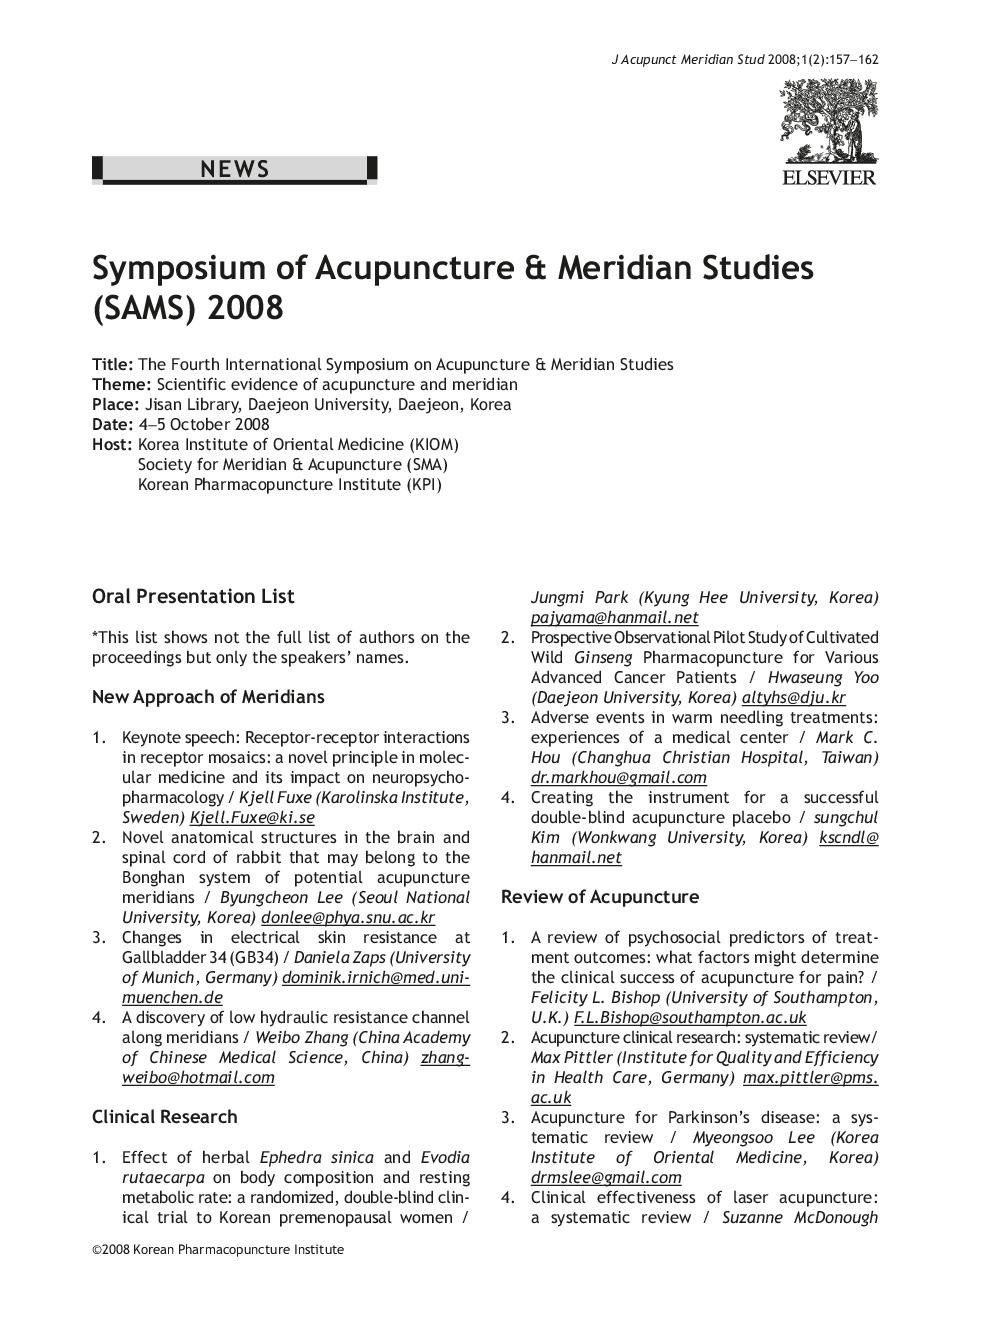 Symposium of Acupuncture & Meridian Studies (SAMS) 2008